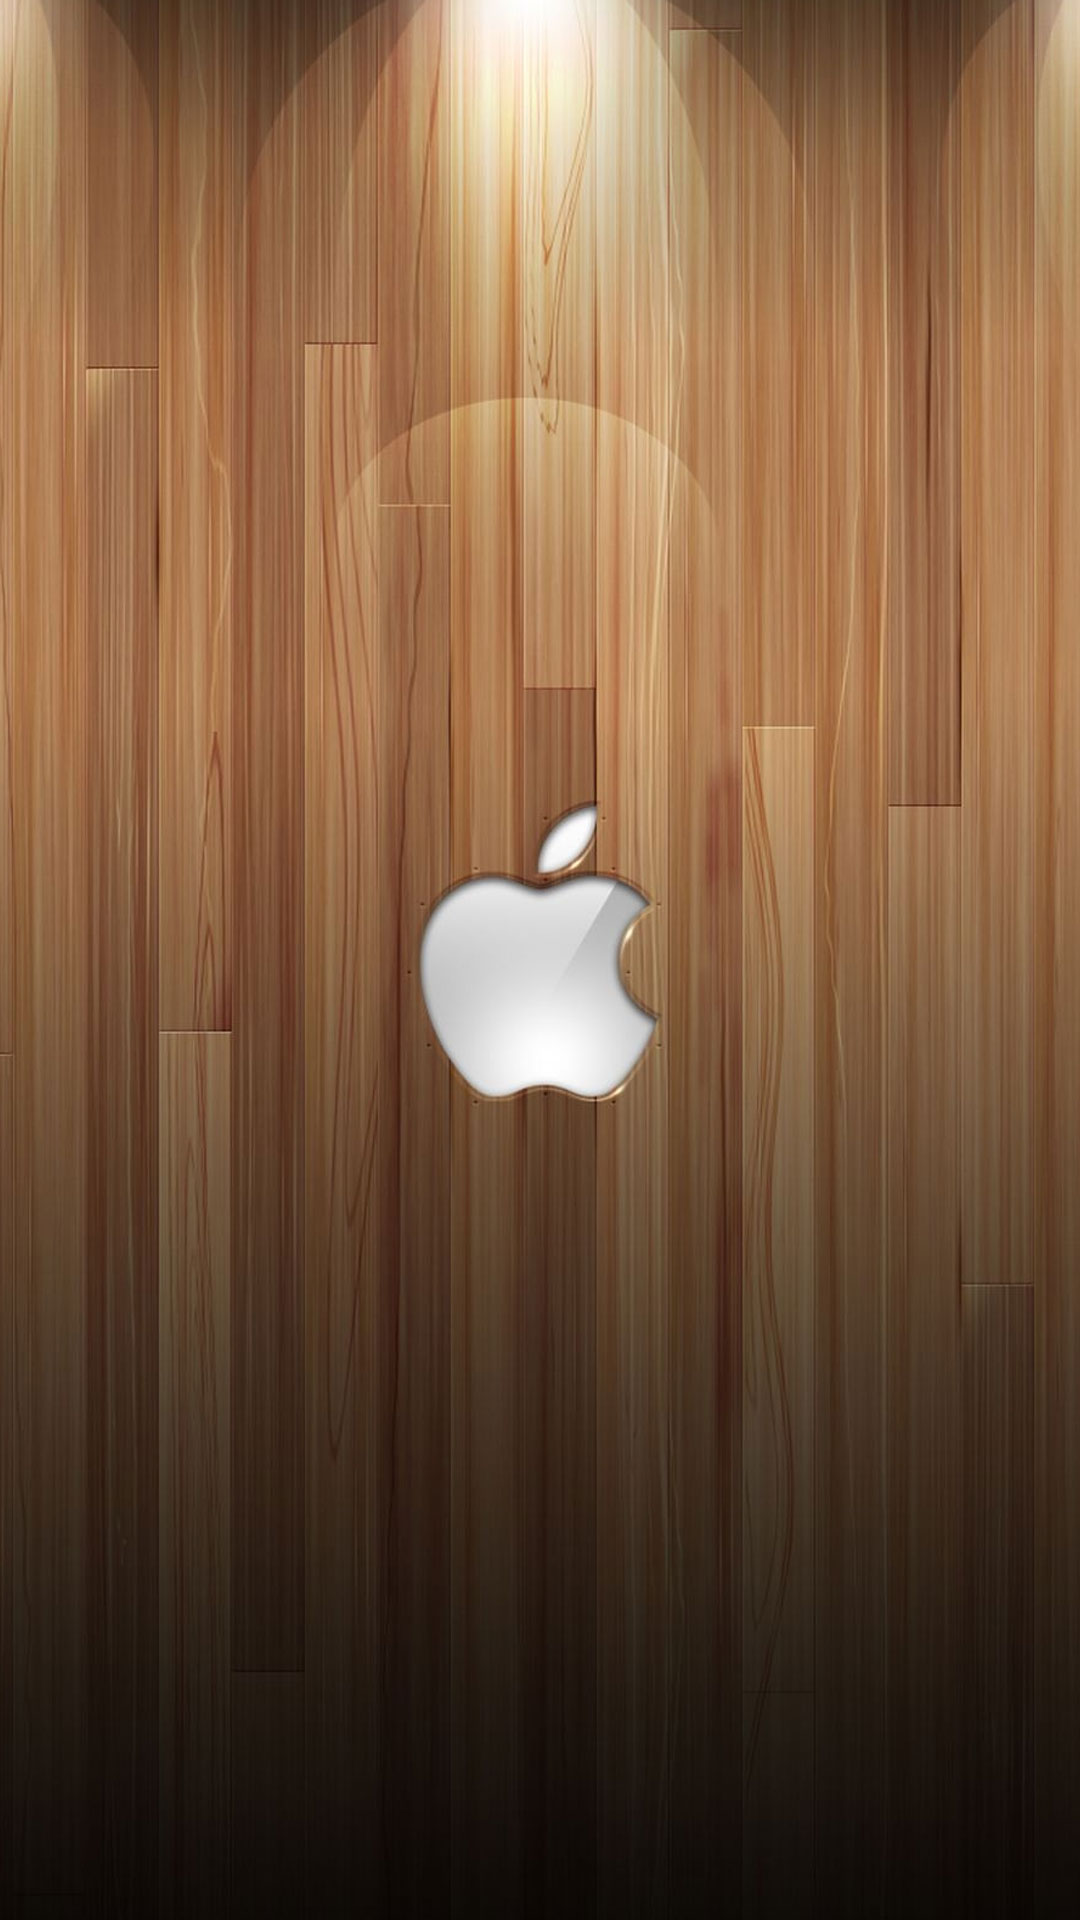 100 Hình nền iPhone 6 6plus đẹp full HD miễn chê